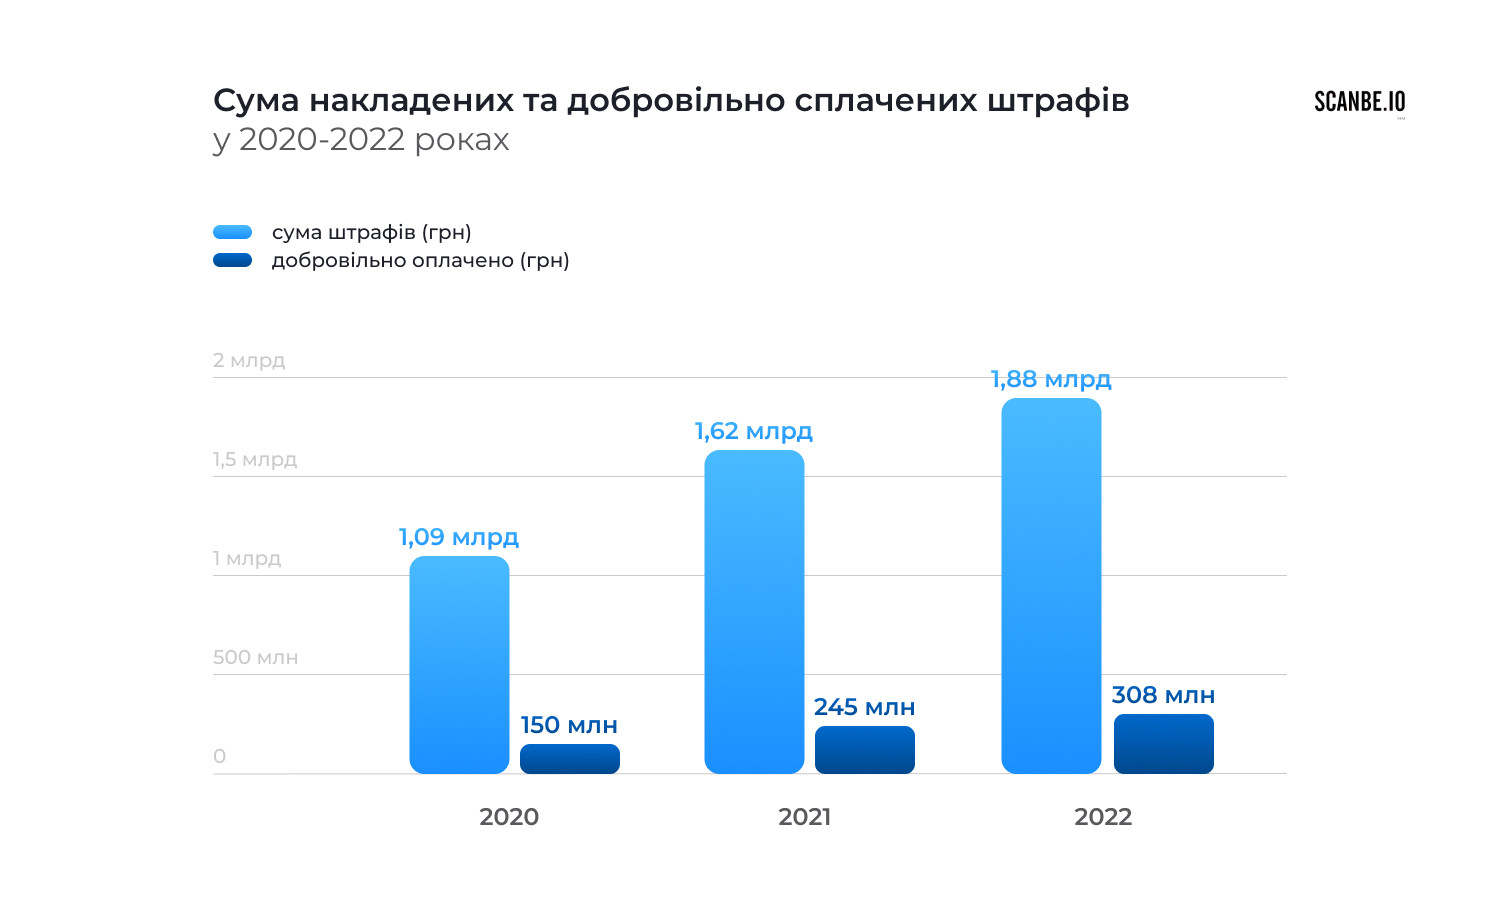 1877408990 гривень штрафів  заробили українські водії за керування у нетверезому стані в 2022 році - зображення